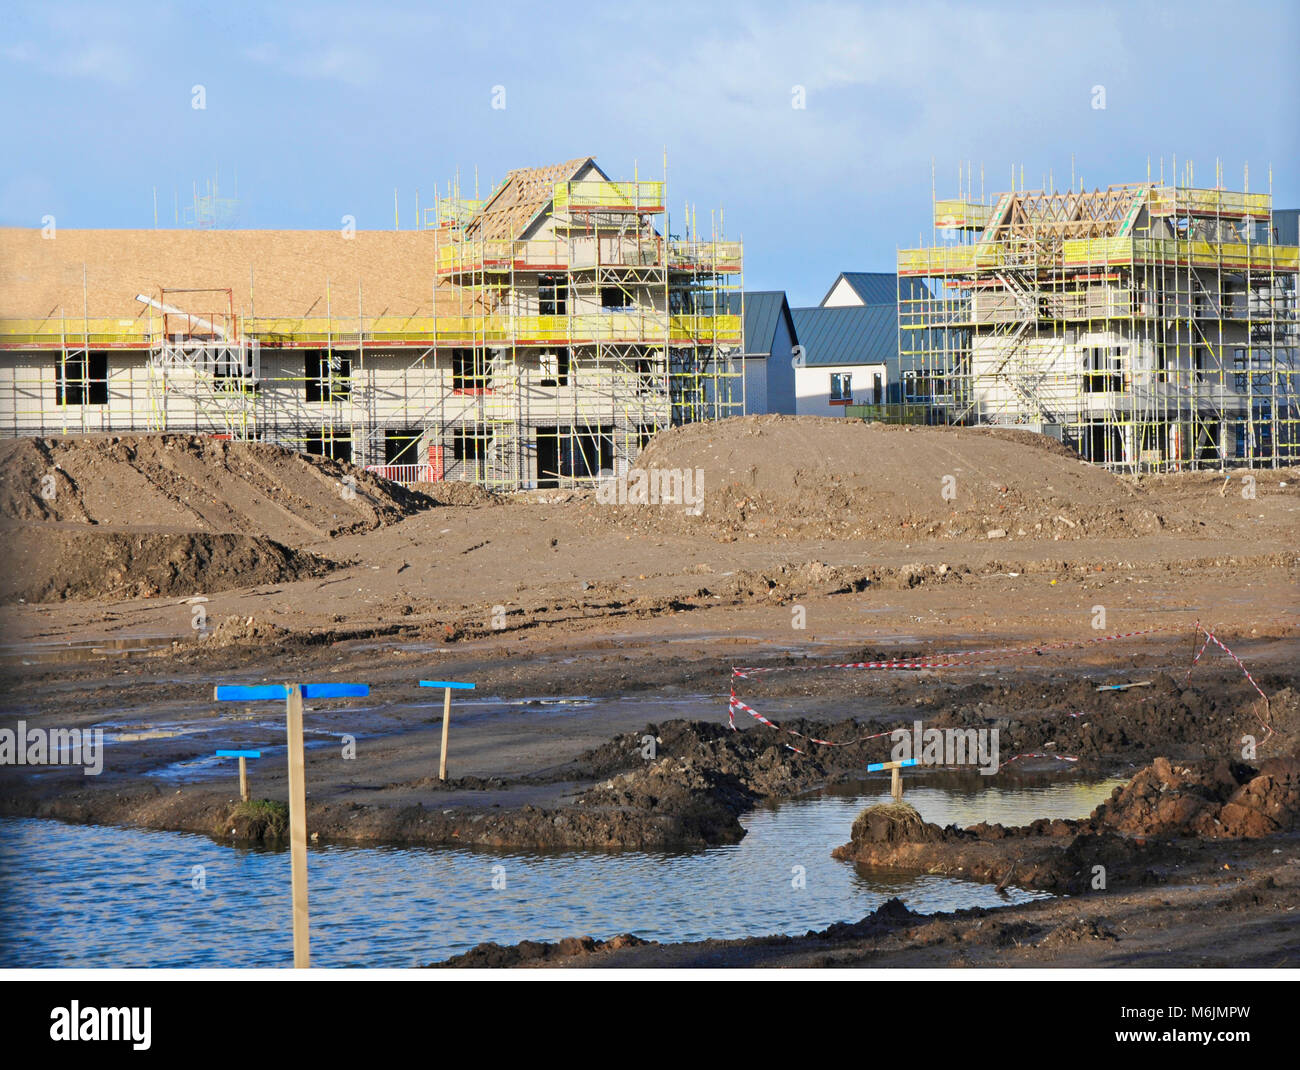 Neue Builds gebaut, wo drei mehrstöckige Wohnblocks abgerissen wurden. (unter Abriss, Explosion sehen). Blackpool Lancashire England Großbritannien Stockfoto